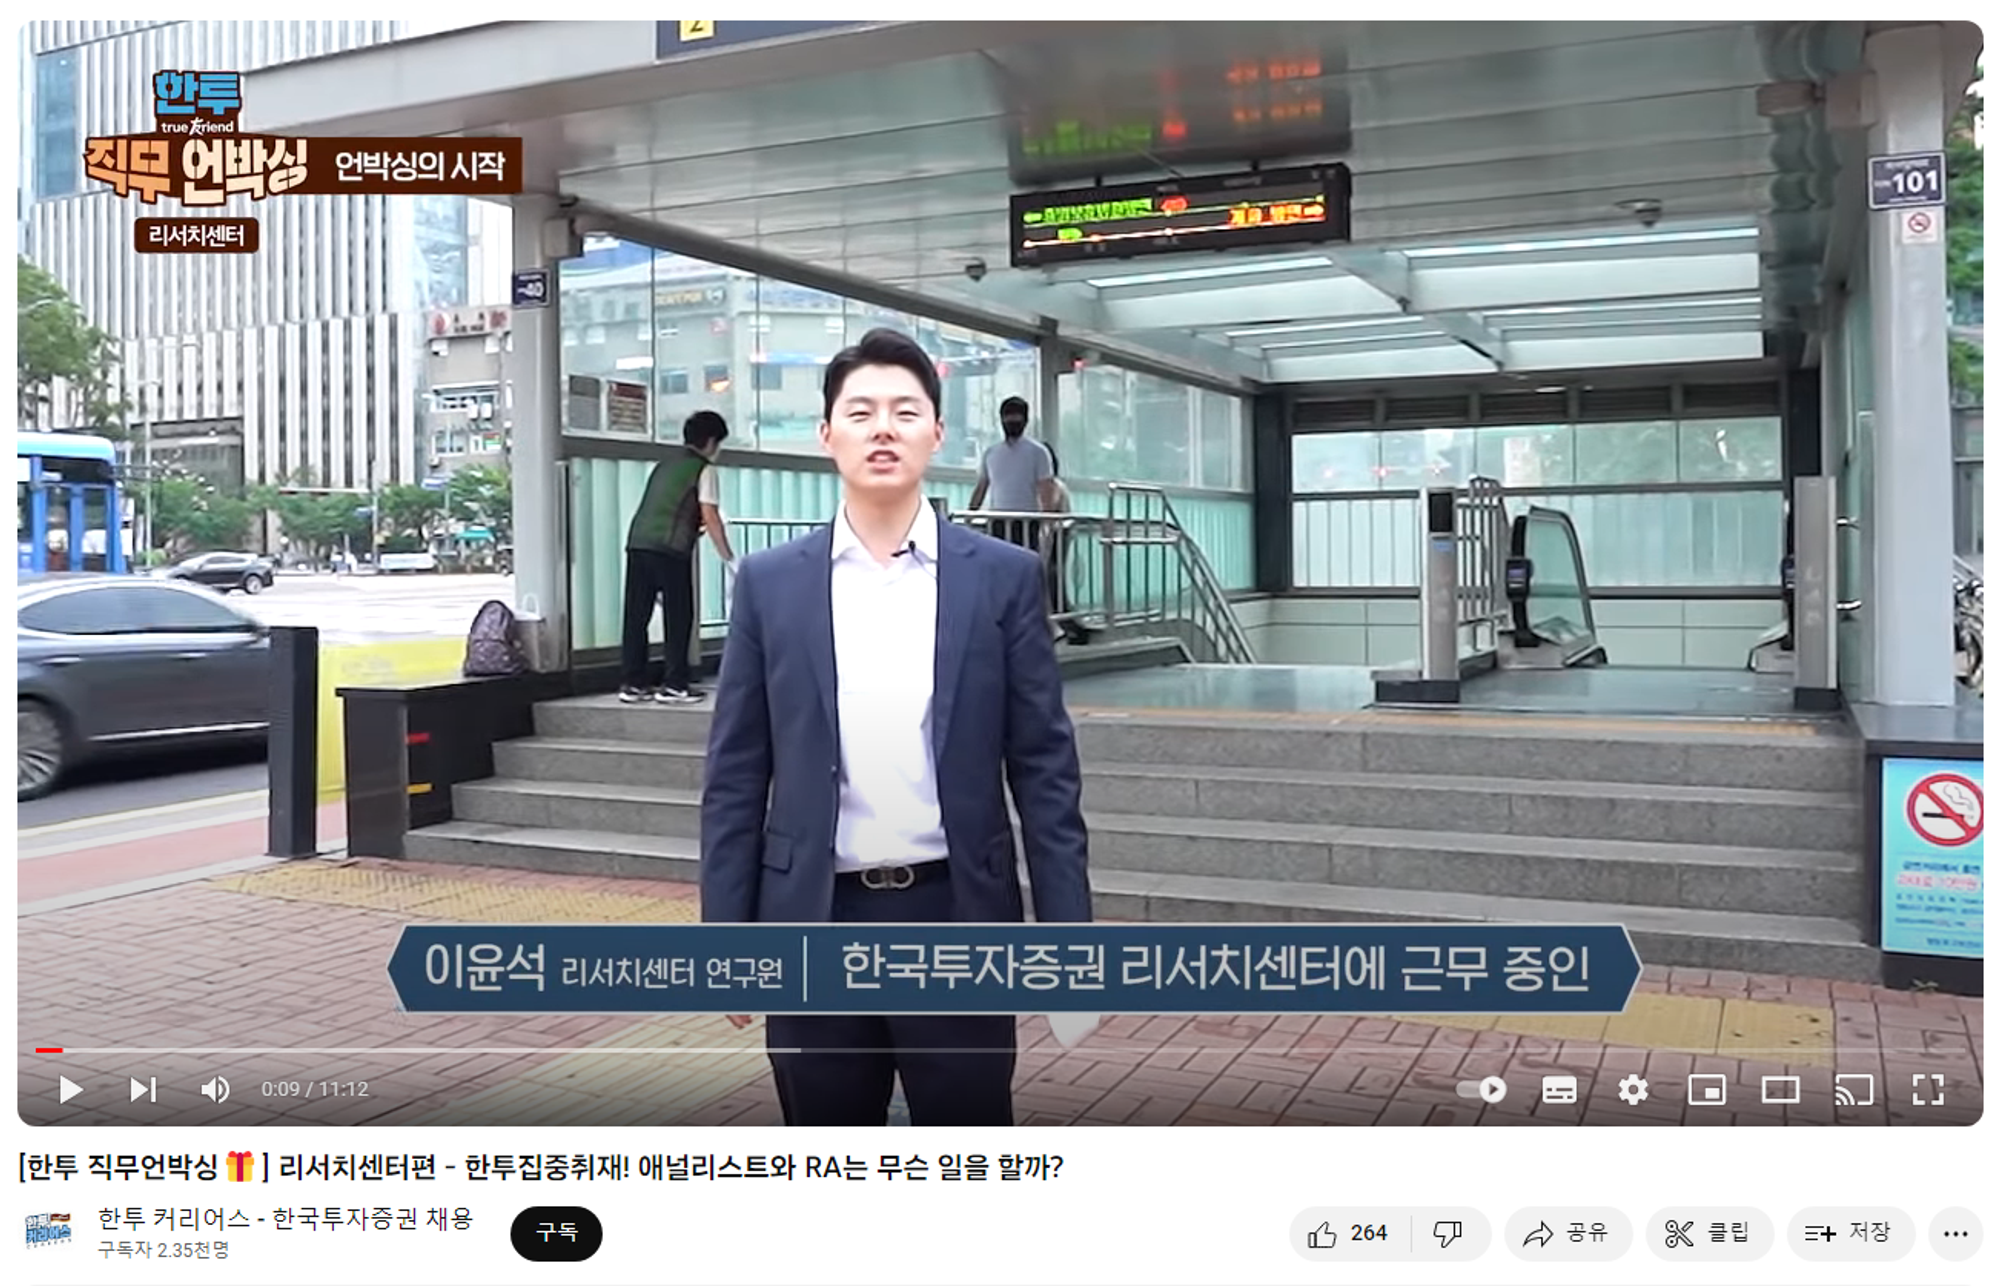 한국투자증권 리서치센터 홍보 영상 MC였는데, 리서치센터 동기들 중 가장 먼저 퇴사했다. 